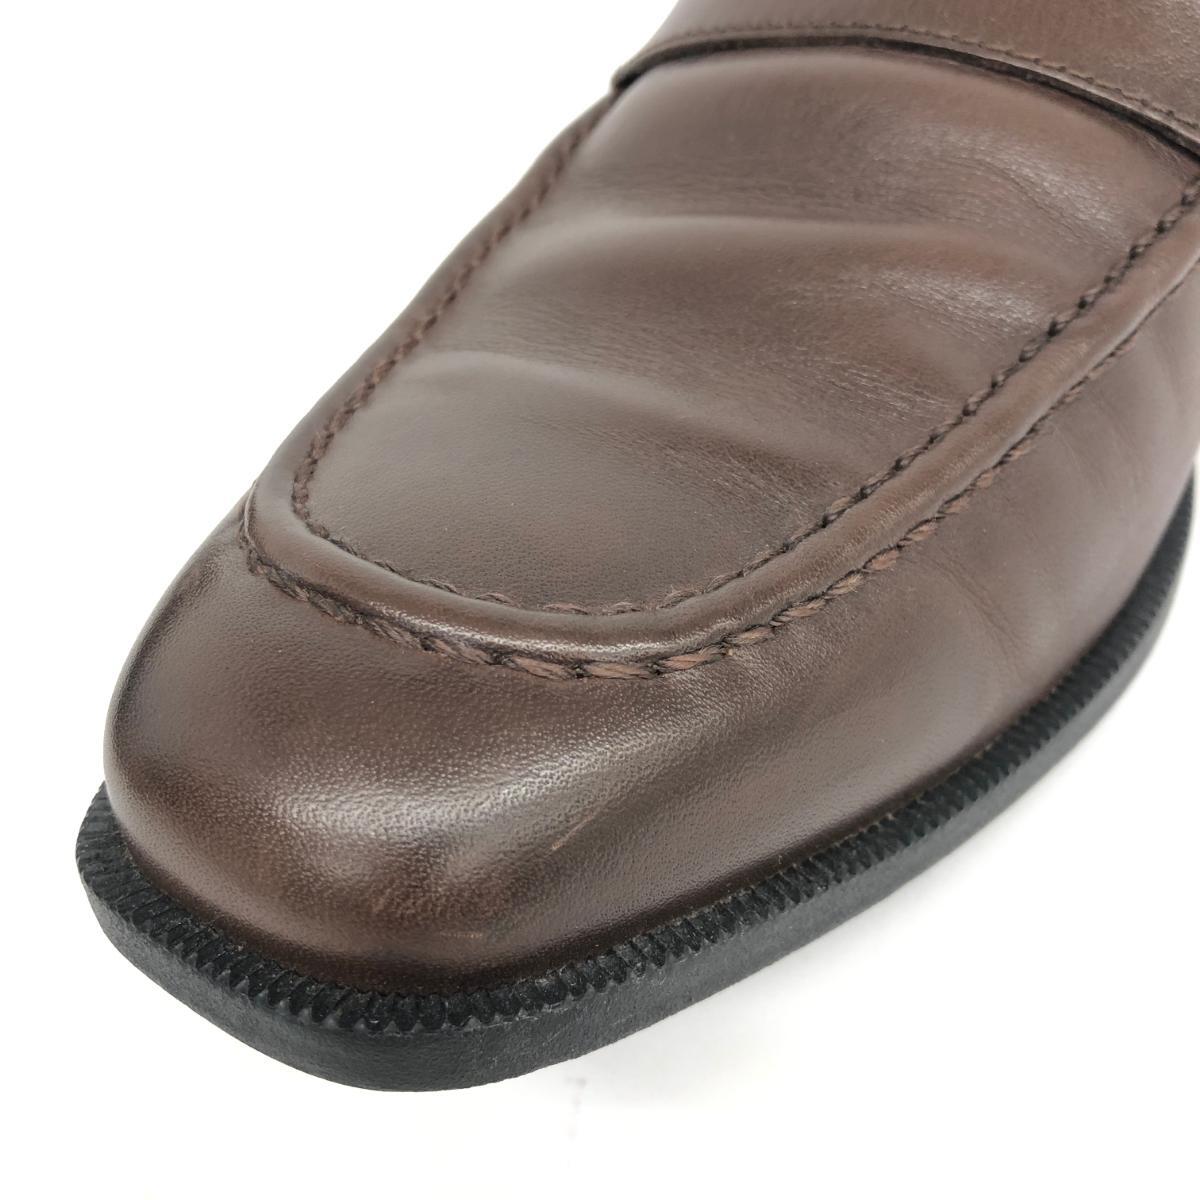  хороший *ROCKPORT блокировка порт монета Loafer 27.5* Brown искусственная кожа мужской обувь обувь shoes